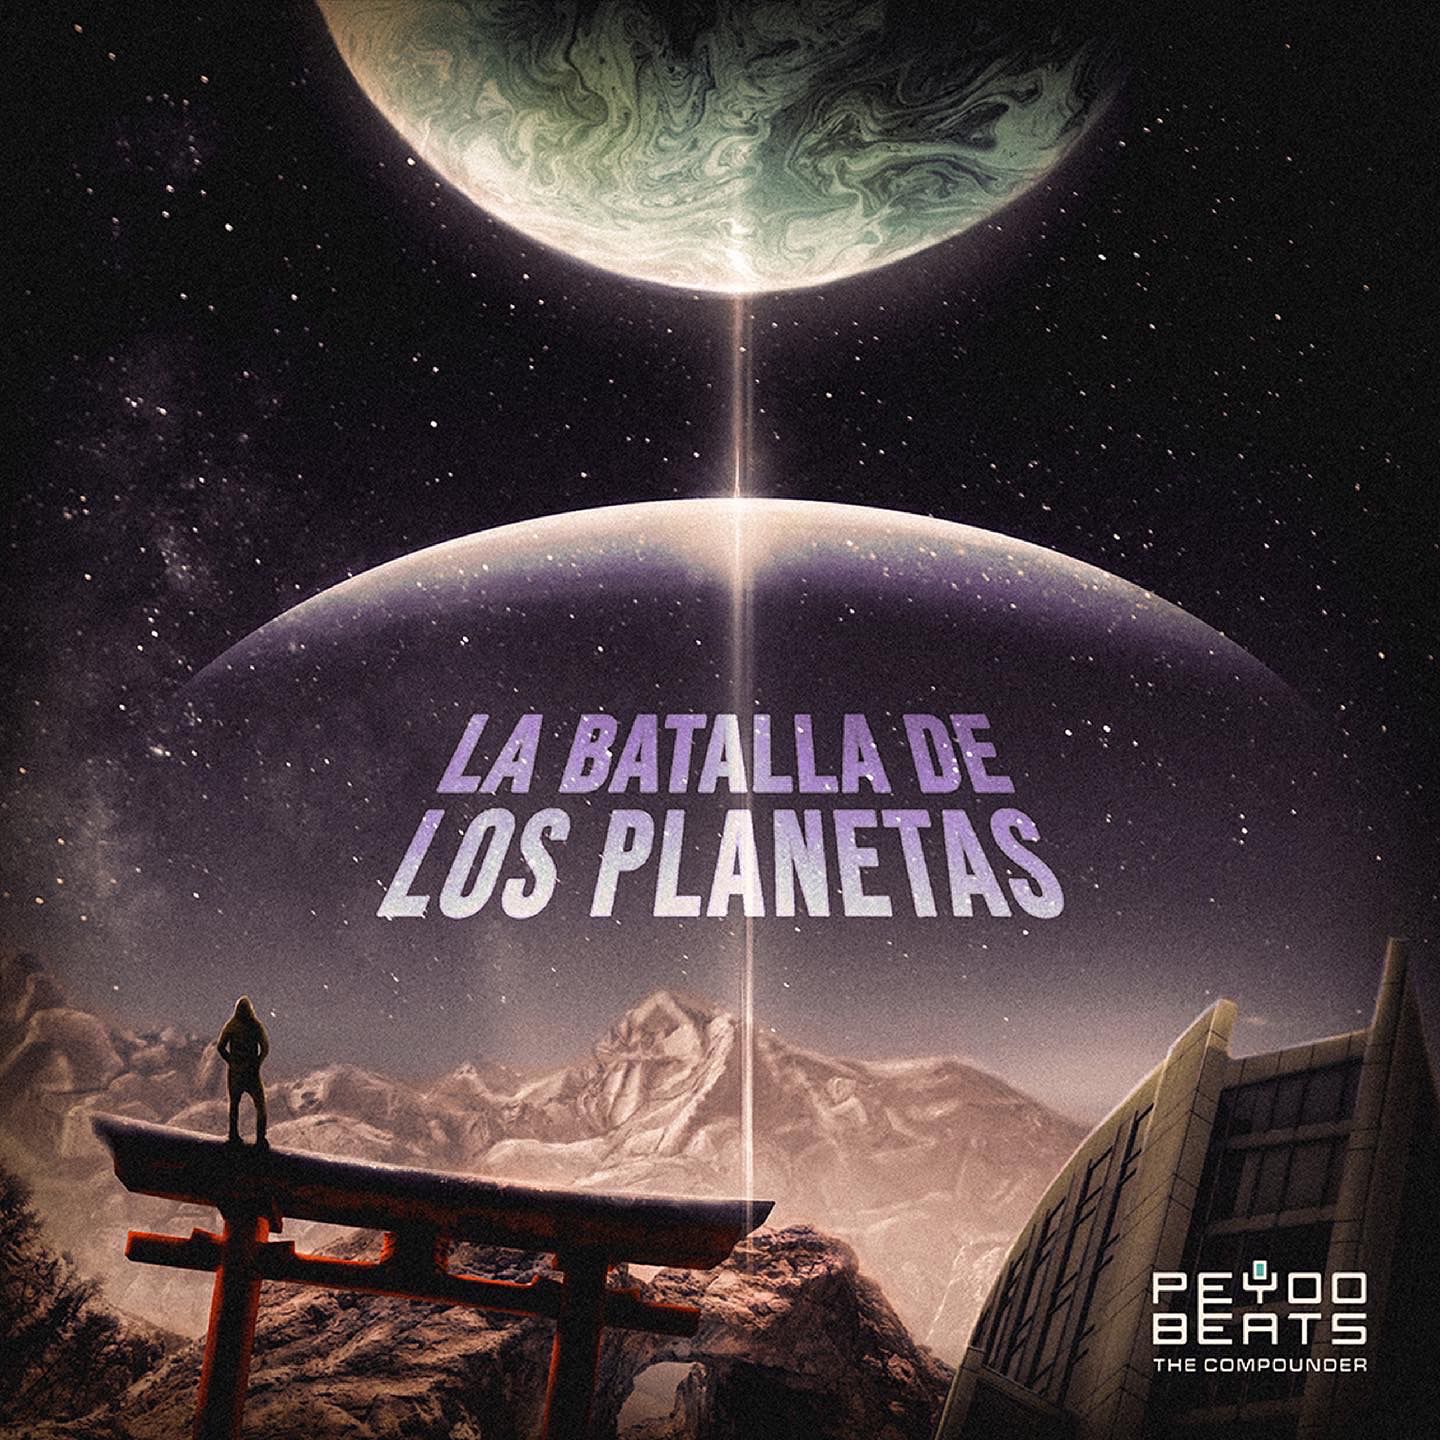 Peyoobeats presenta "La Batalla De Los Planetas"